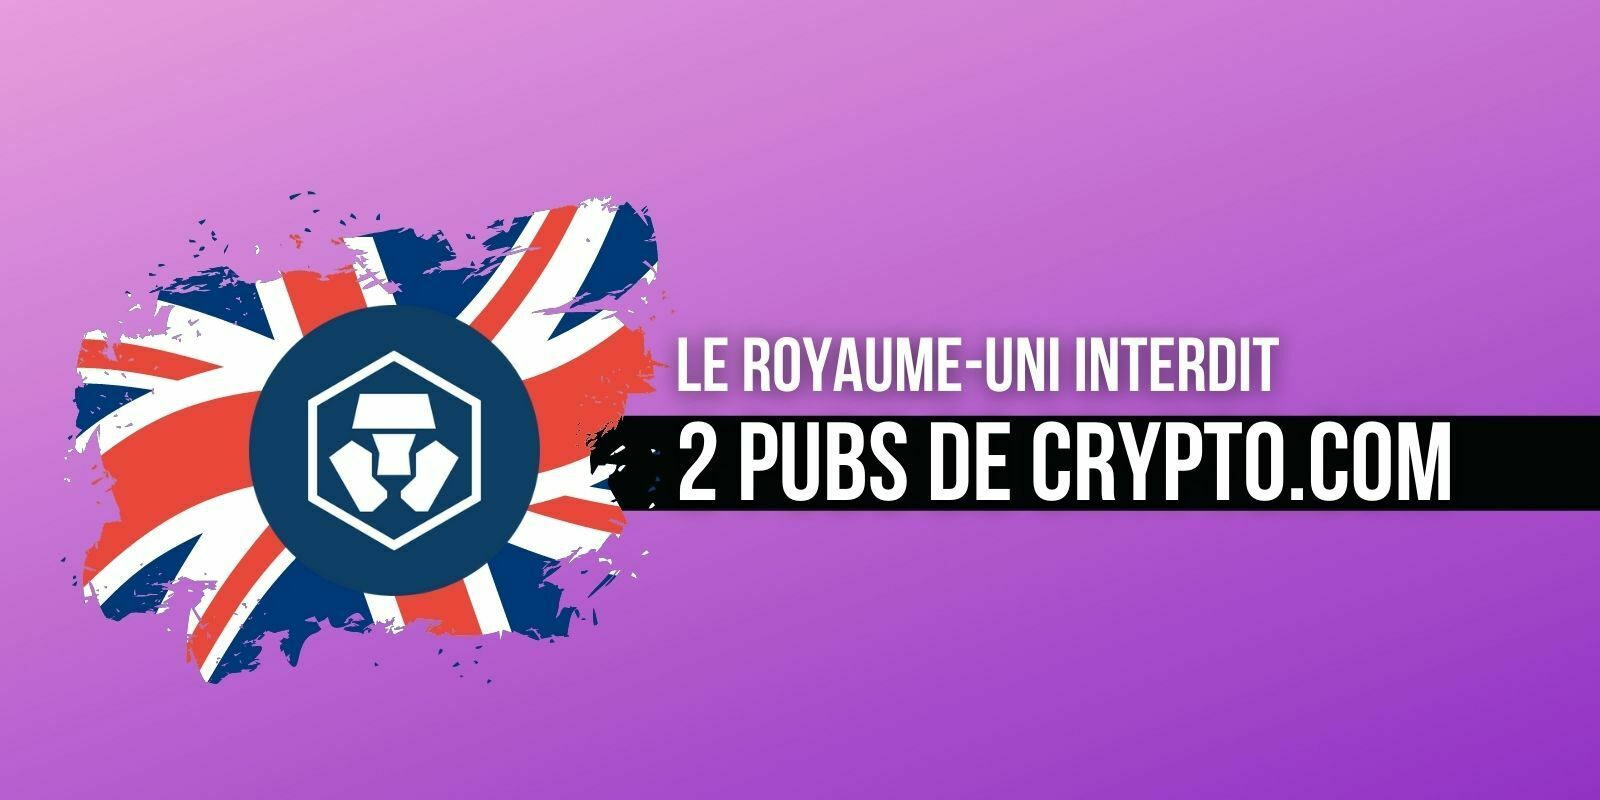 Crypto.com (CRO) : le Royaume-Uni interdit 2 publicités jugés trompeuses, les restrictions continuent